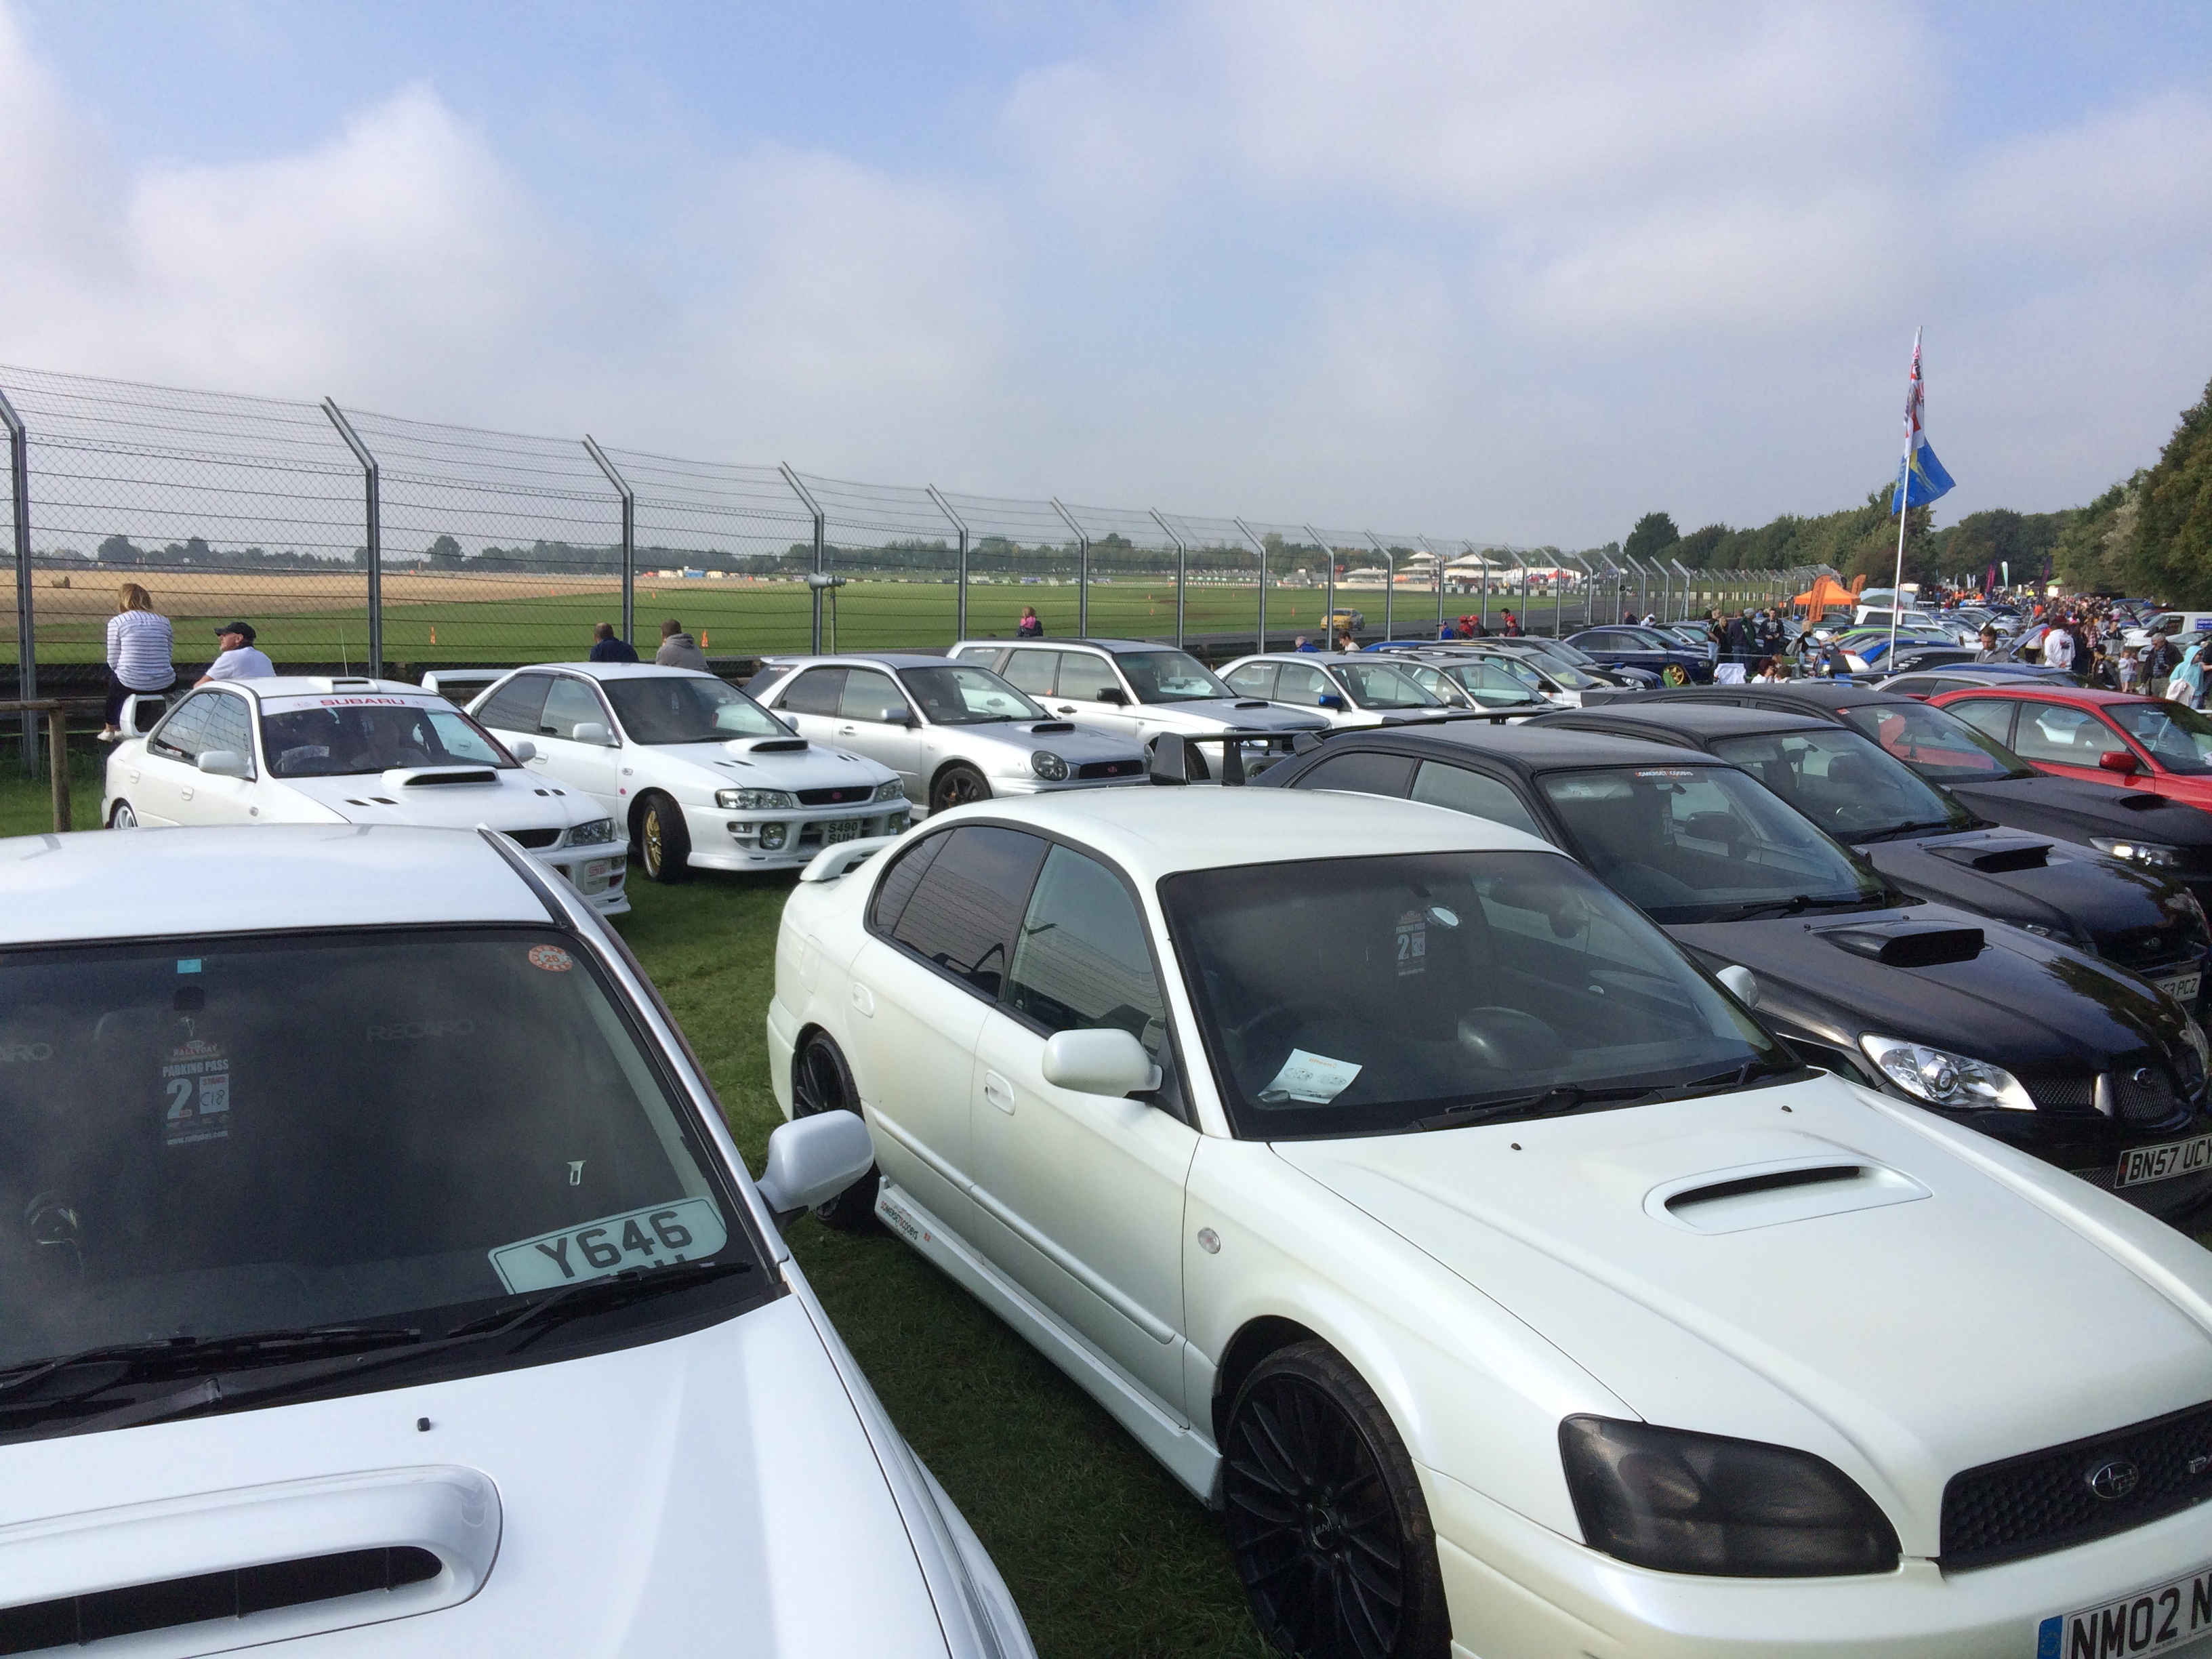 A sea of Subarus